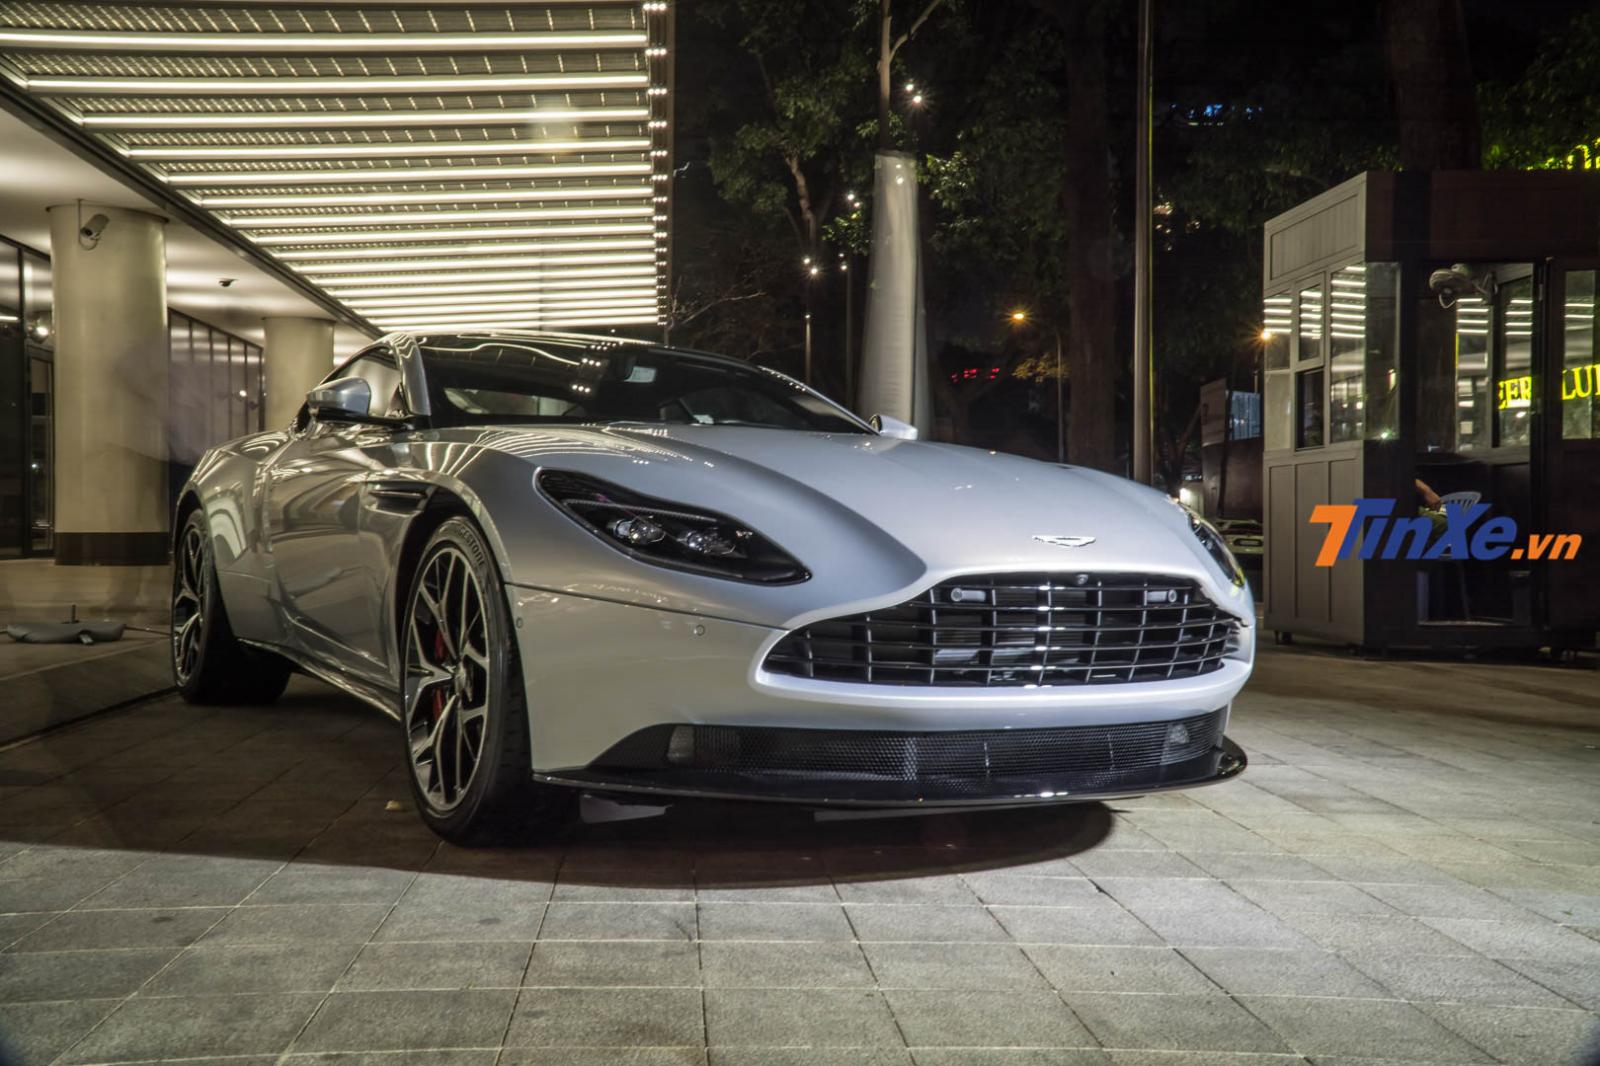 Mức giá bán chính hãng tại thị trường Việt Nam của Aston Martin DB11 V8 là 15,868 tỷ đồng